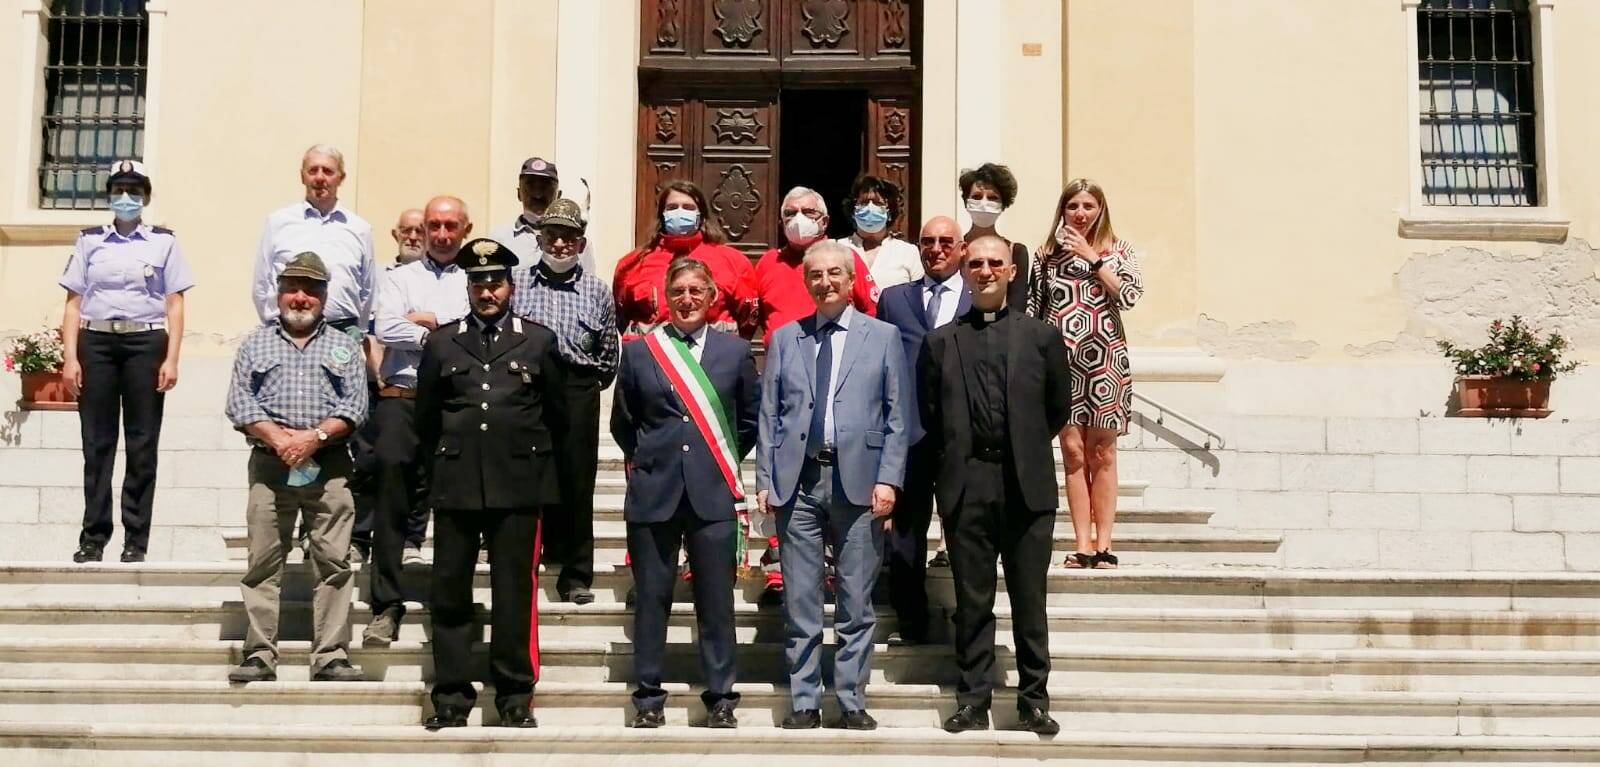 Prefetto di Cuneo in visita a San Michele Mondovì. Il sindaco: “Grande emozione”